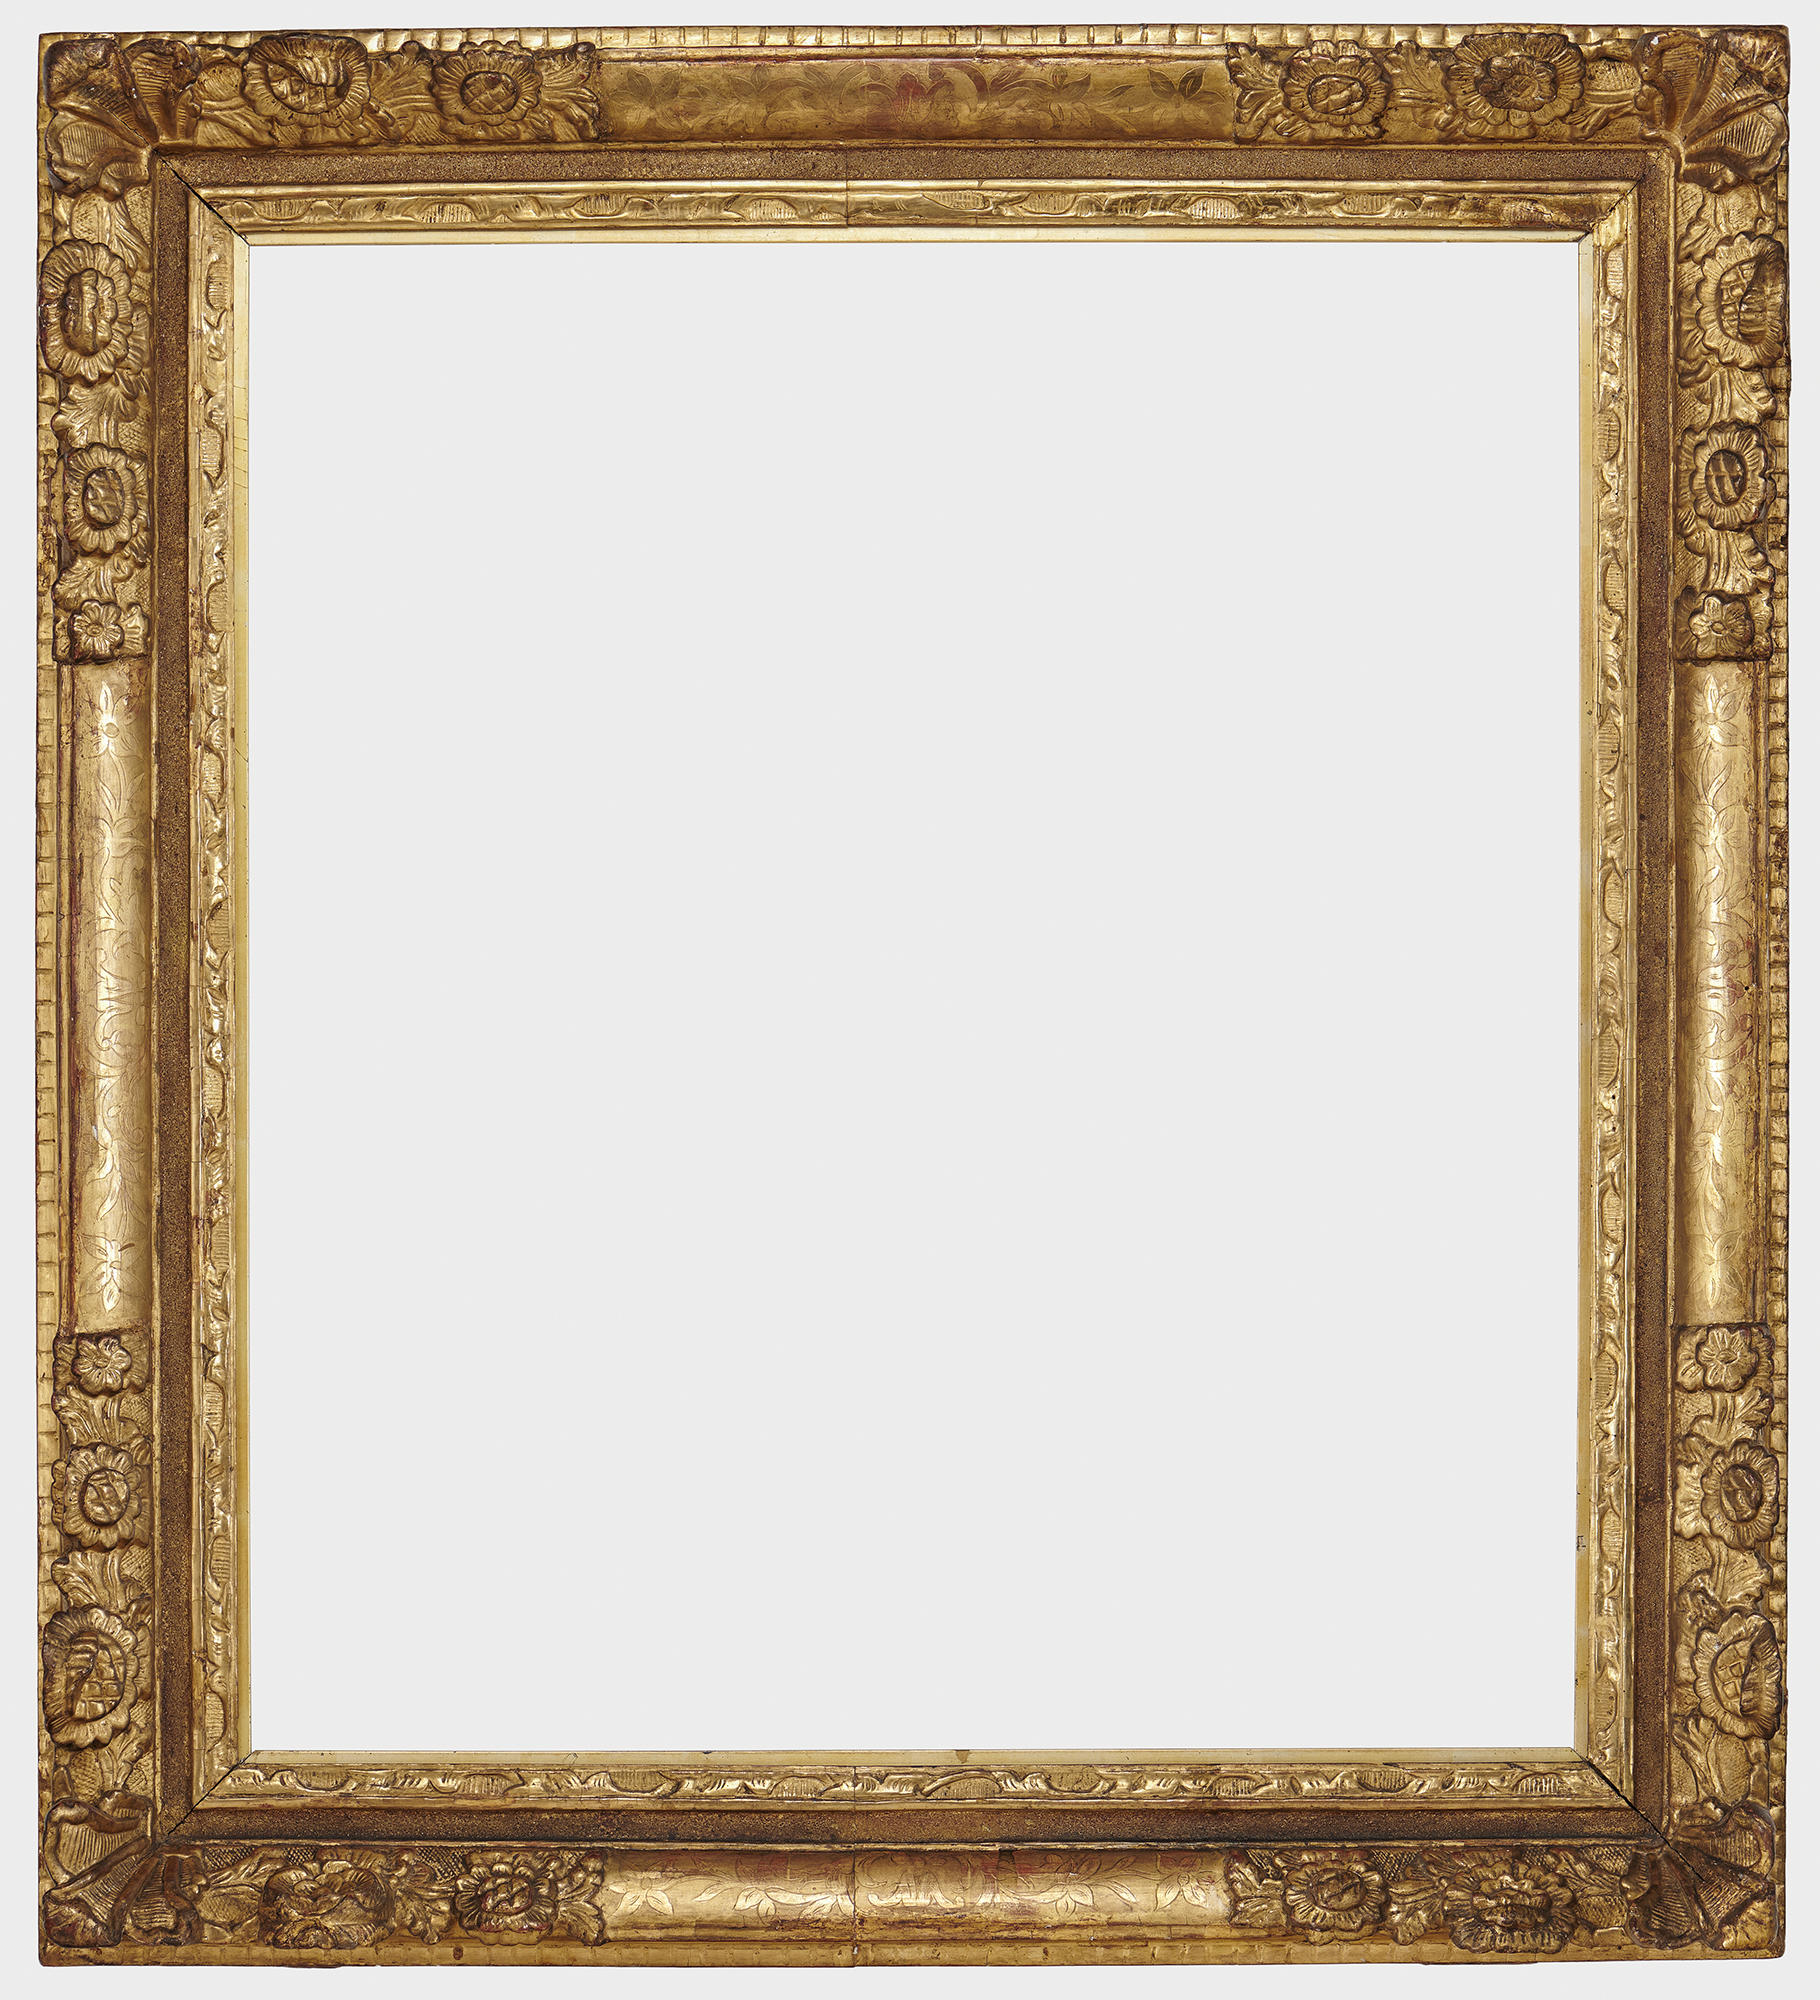 An empty gold frame.